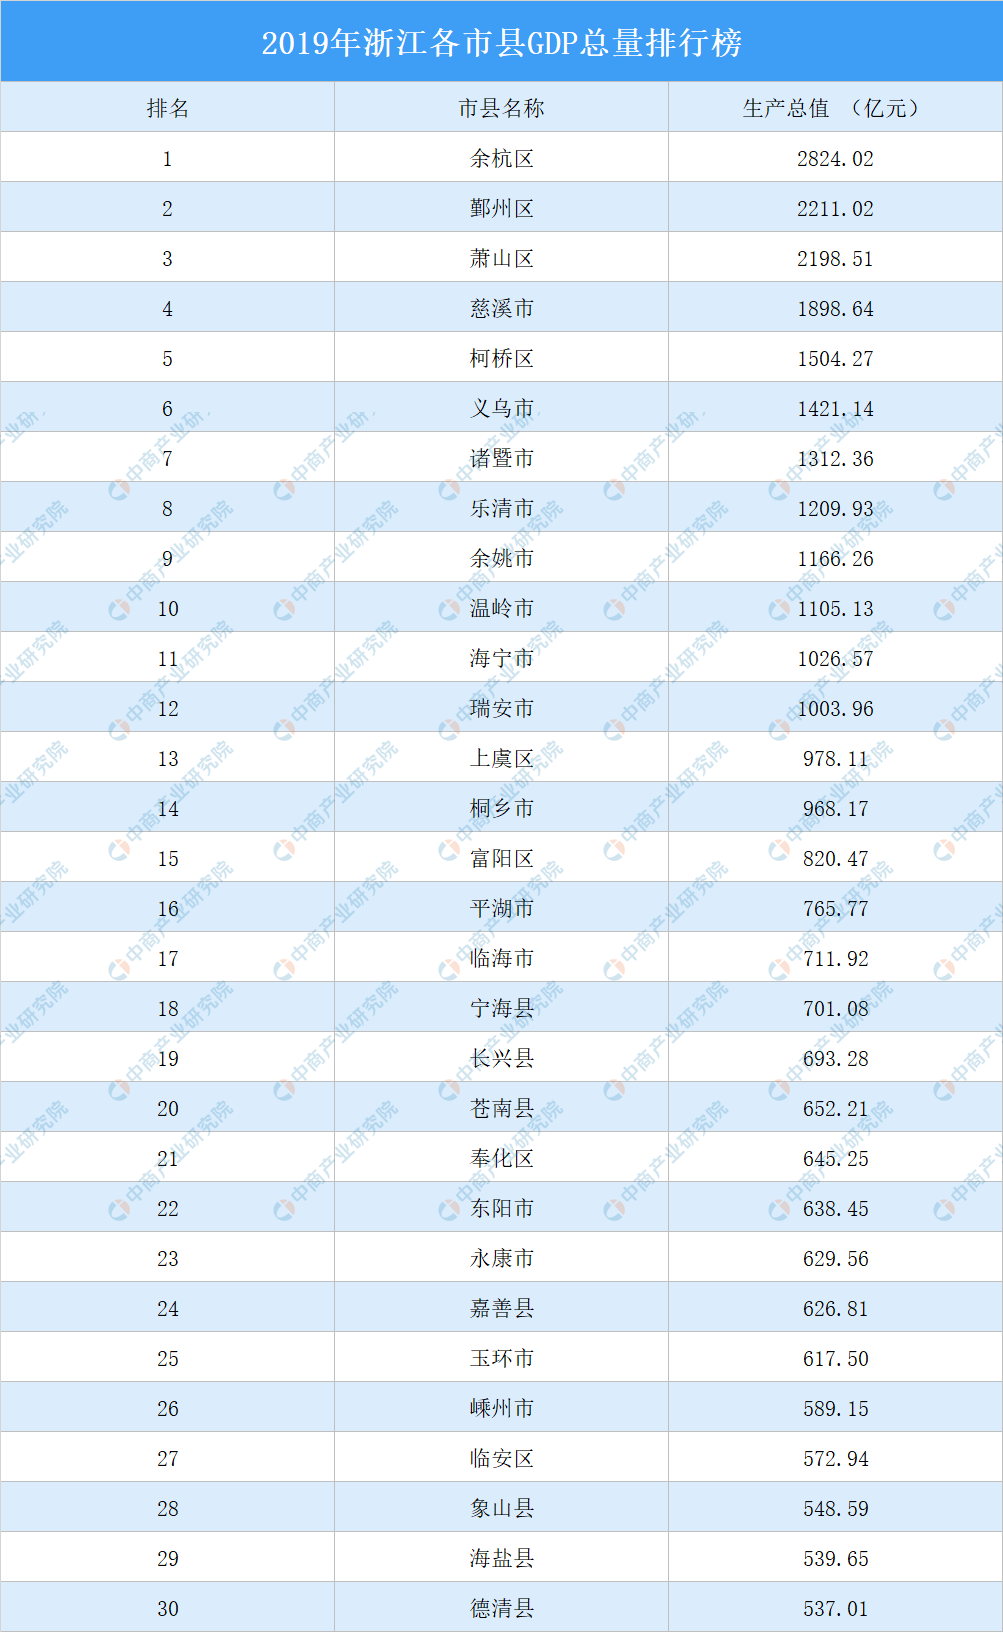 2019年浙江各市县gdp总量排行榜:12市县超千亿(图)